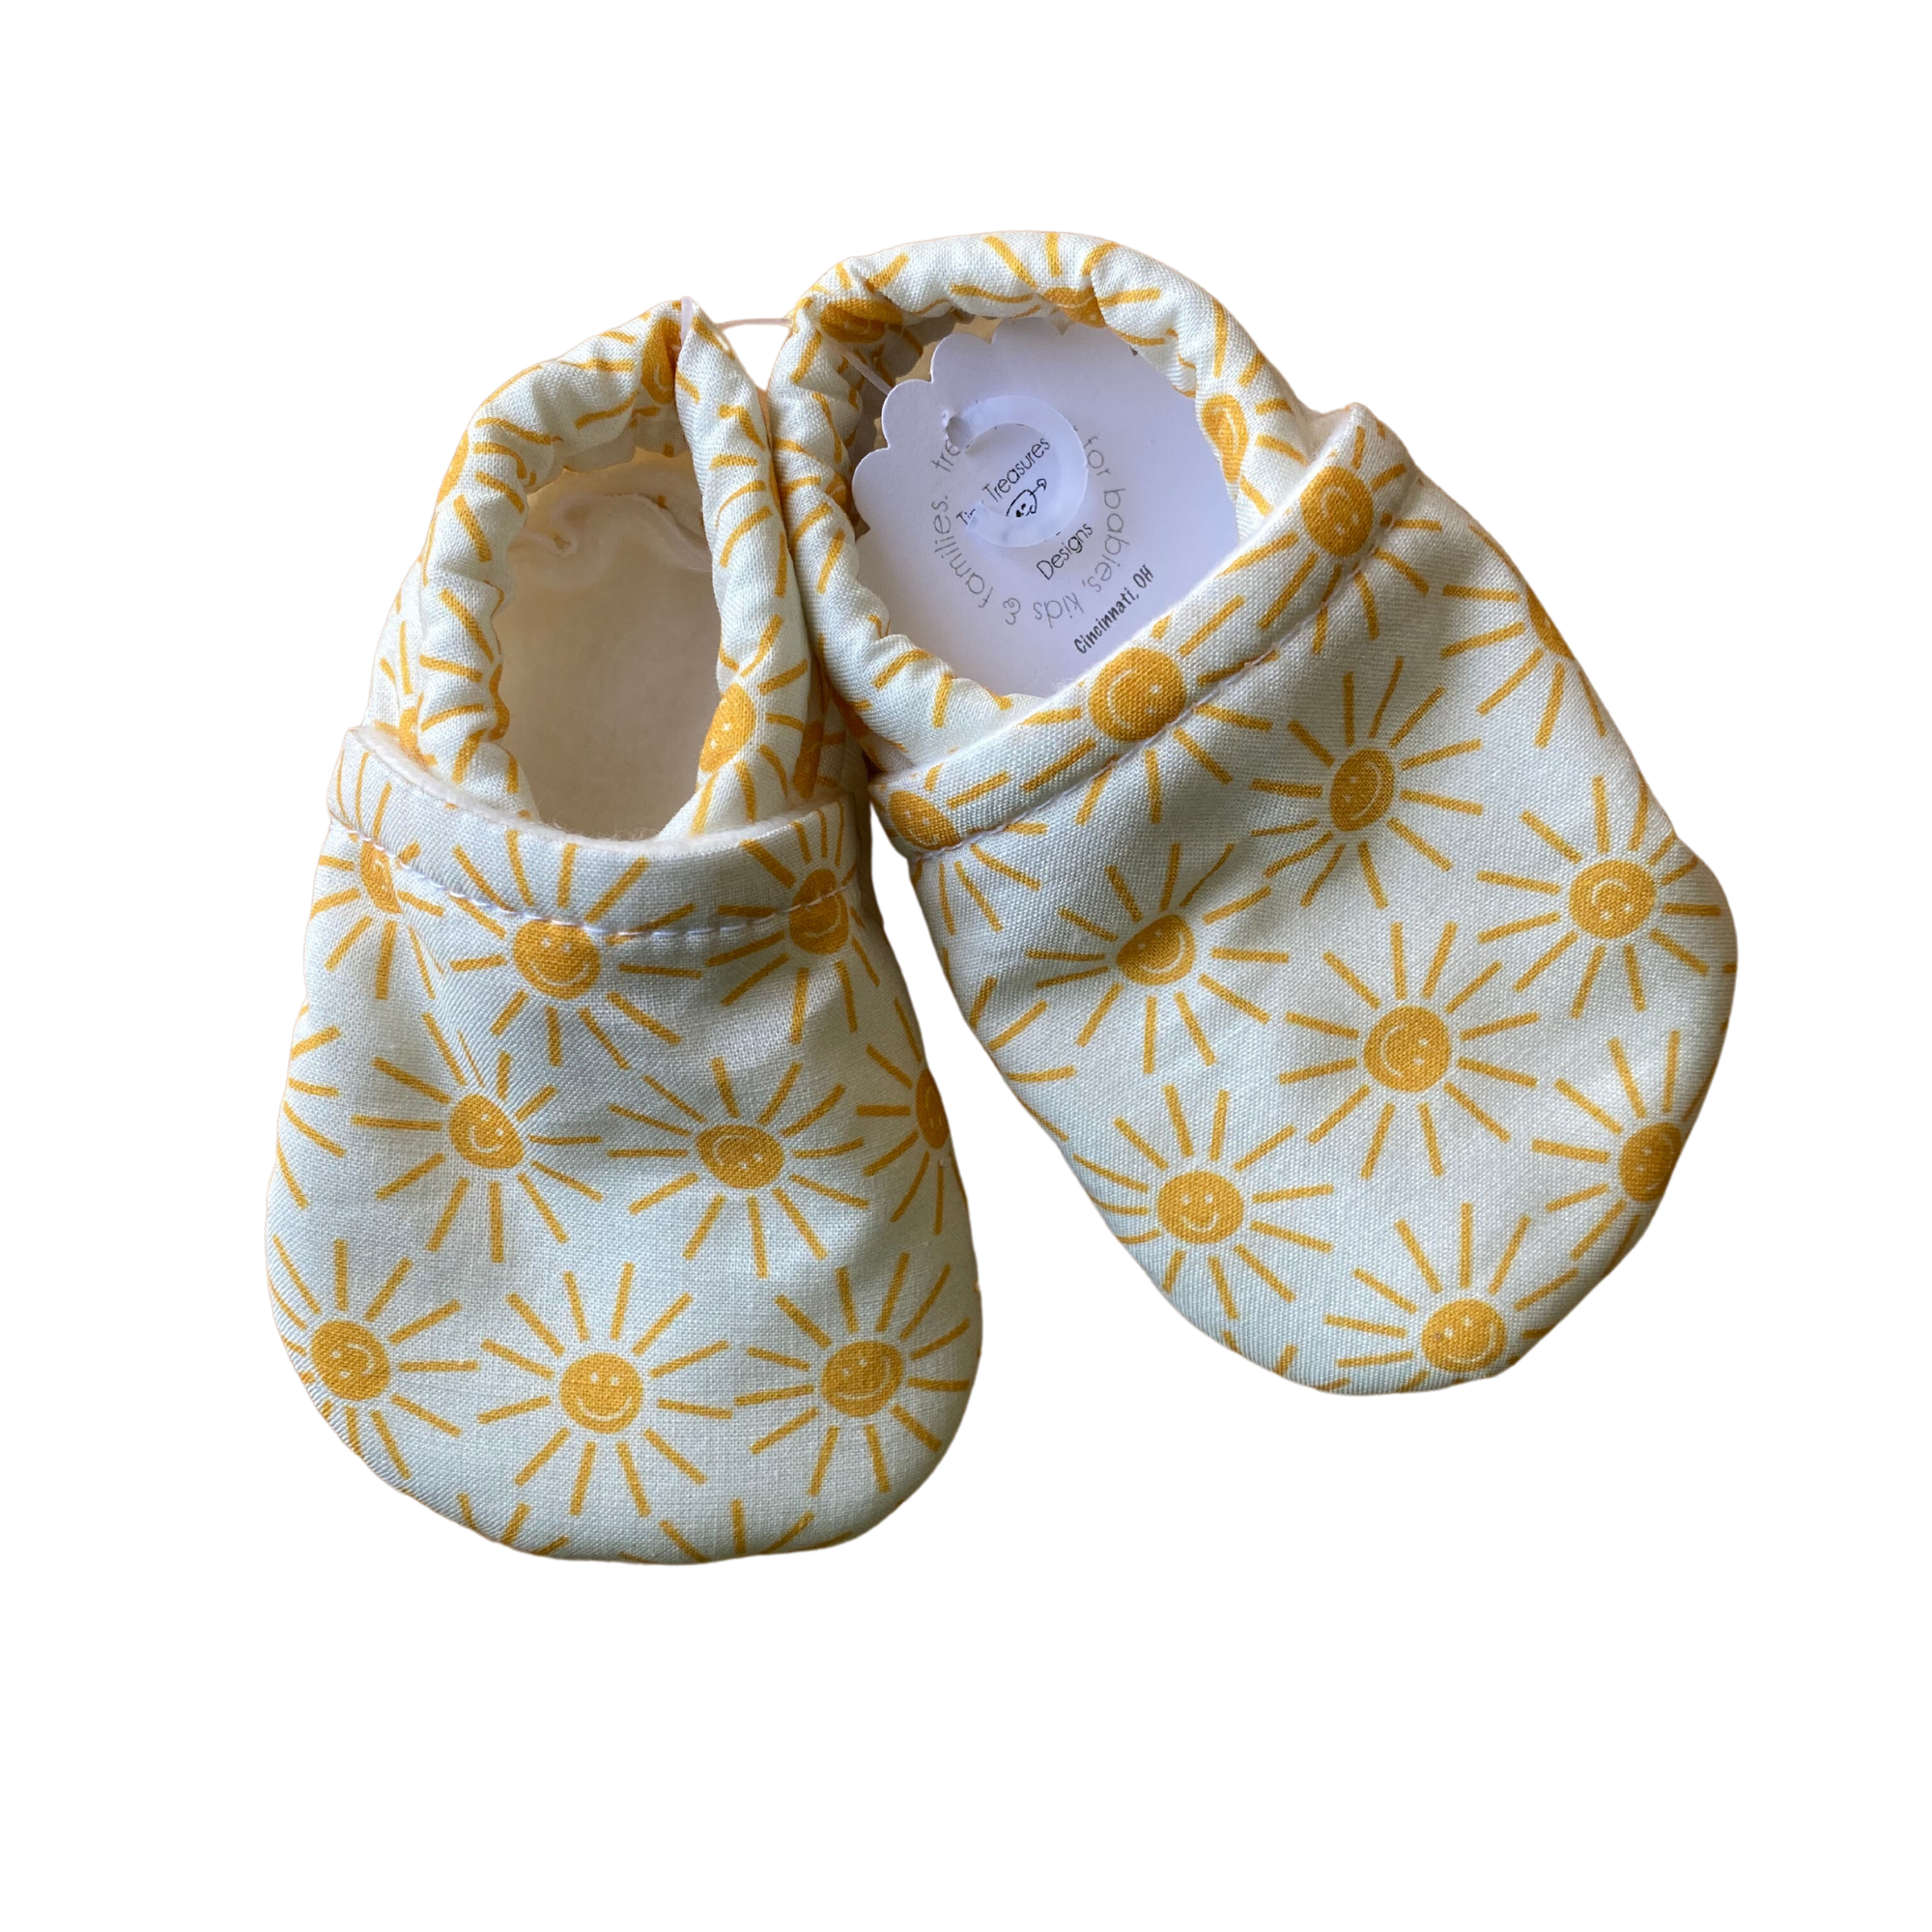 8cm Cute Felt Baby Shoes - Felt and Yarn